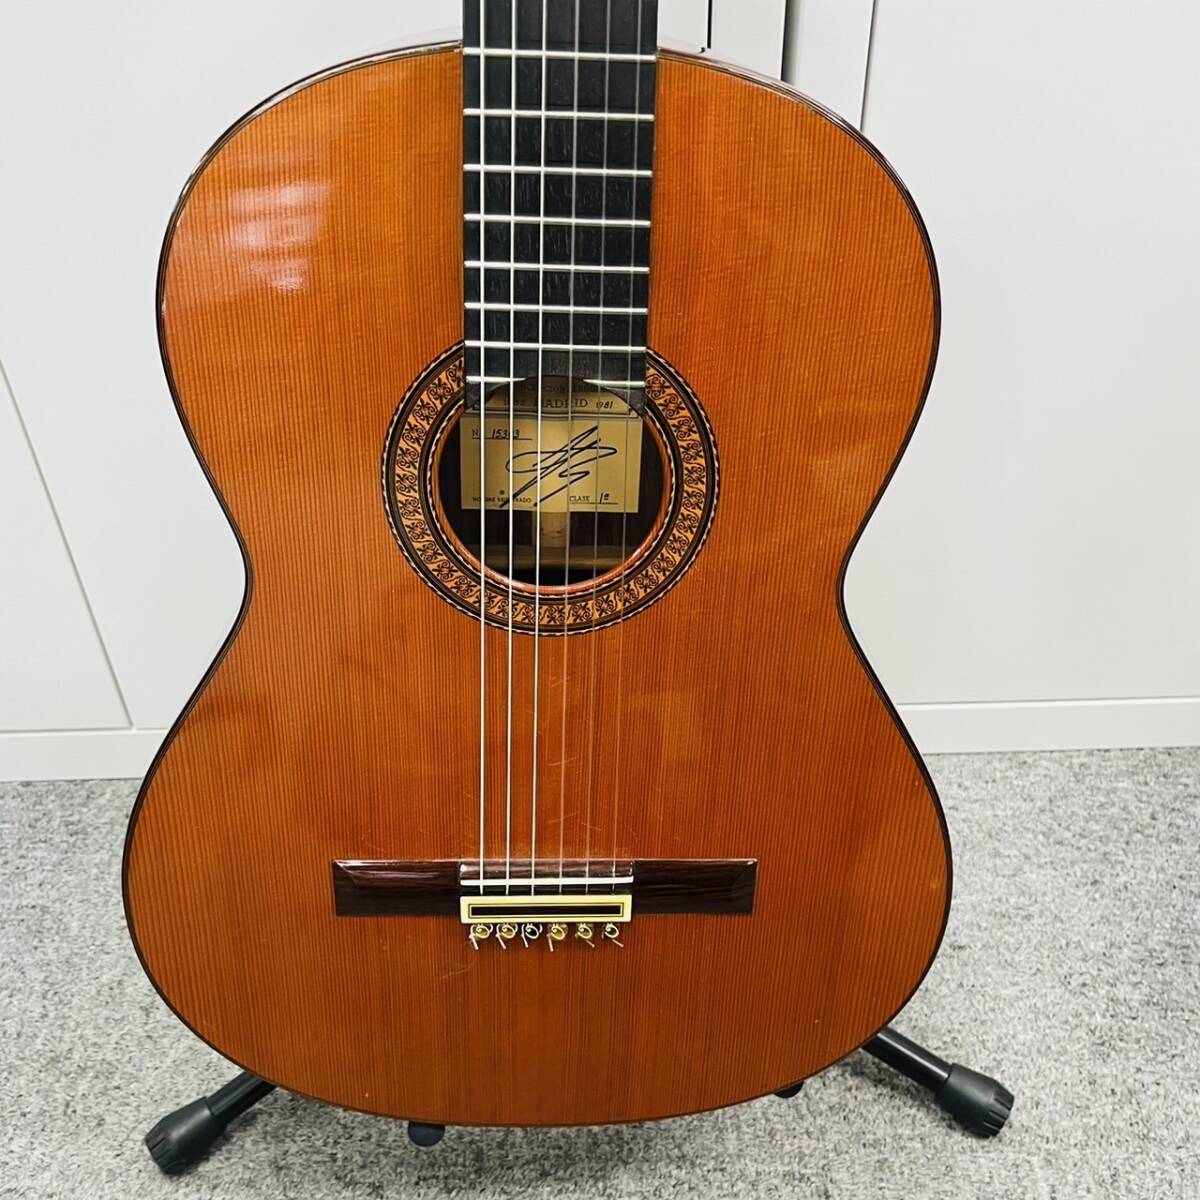 14978/ Jose Ramirez クラシックギター ハードケース付き 1981 楽器 音楽_画像4